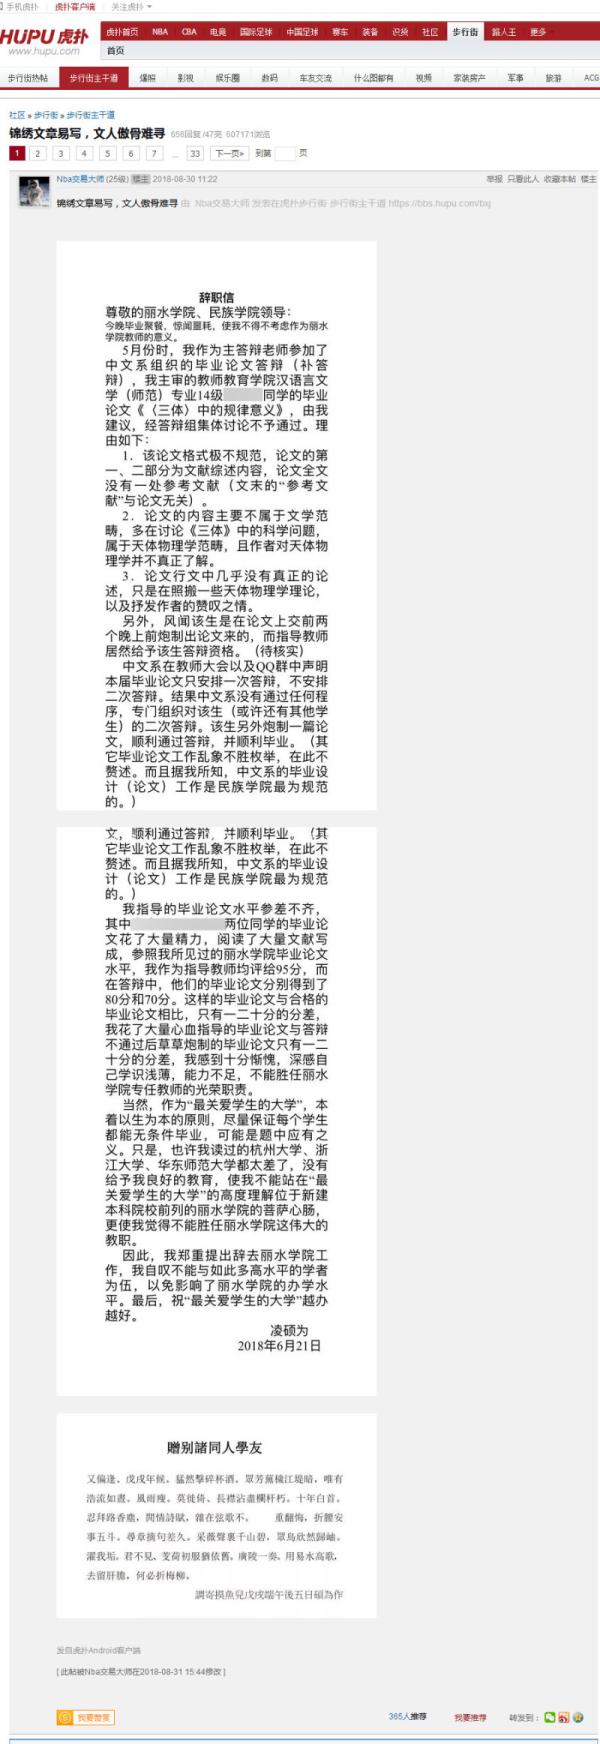 虎扑论坛上，凌硕为辞职一事所发的帖子阅读量已经超过60万